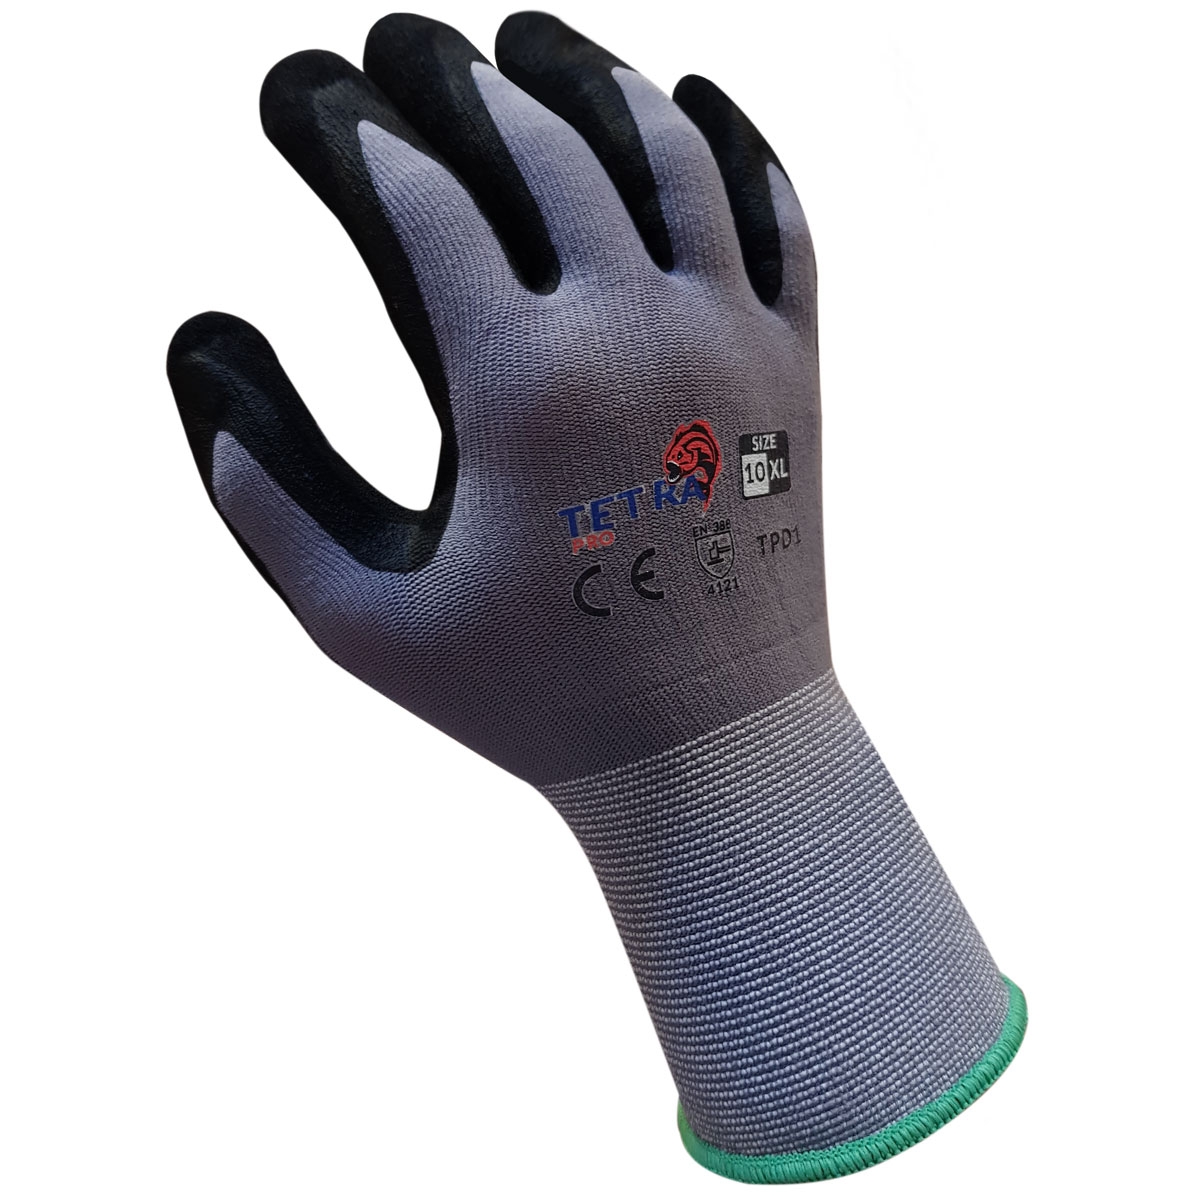 Redfyn Pro Double Nitrile Gloves